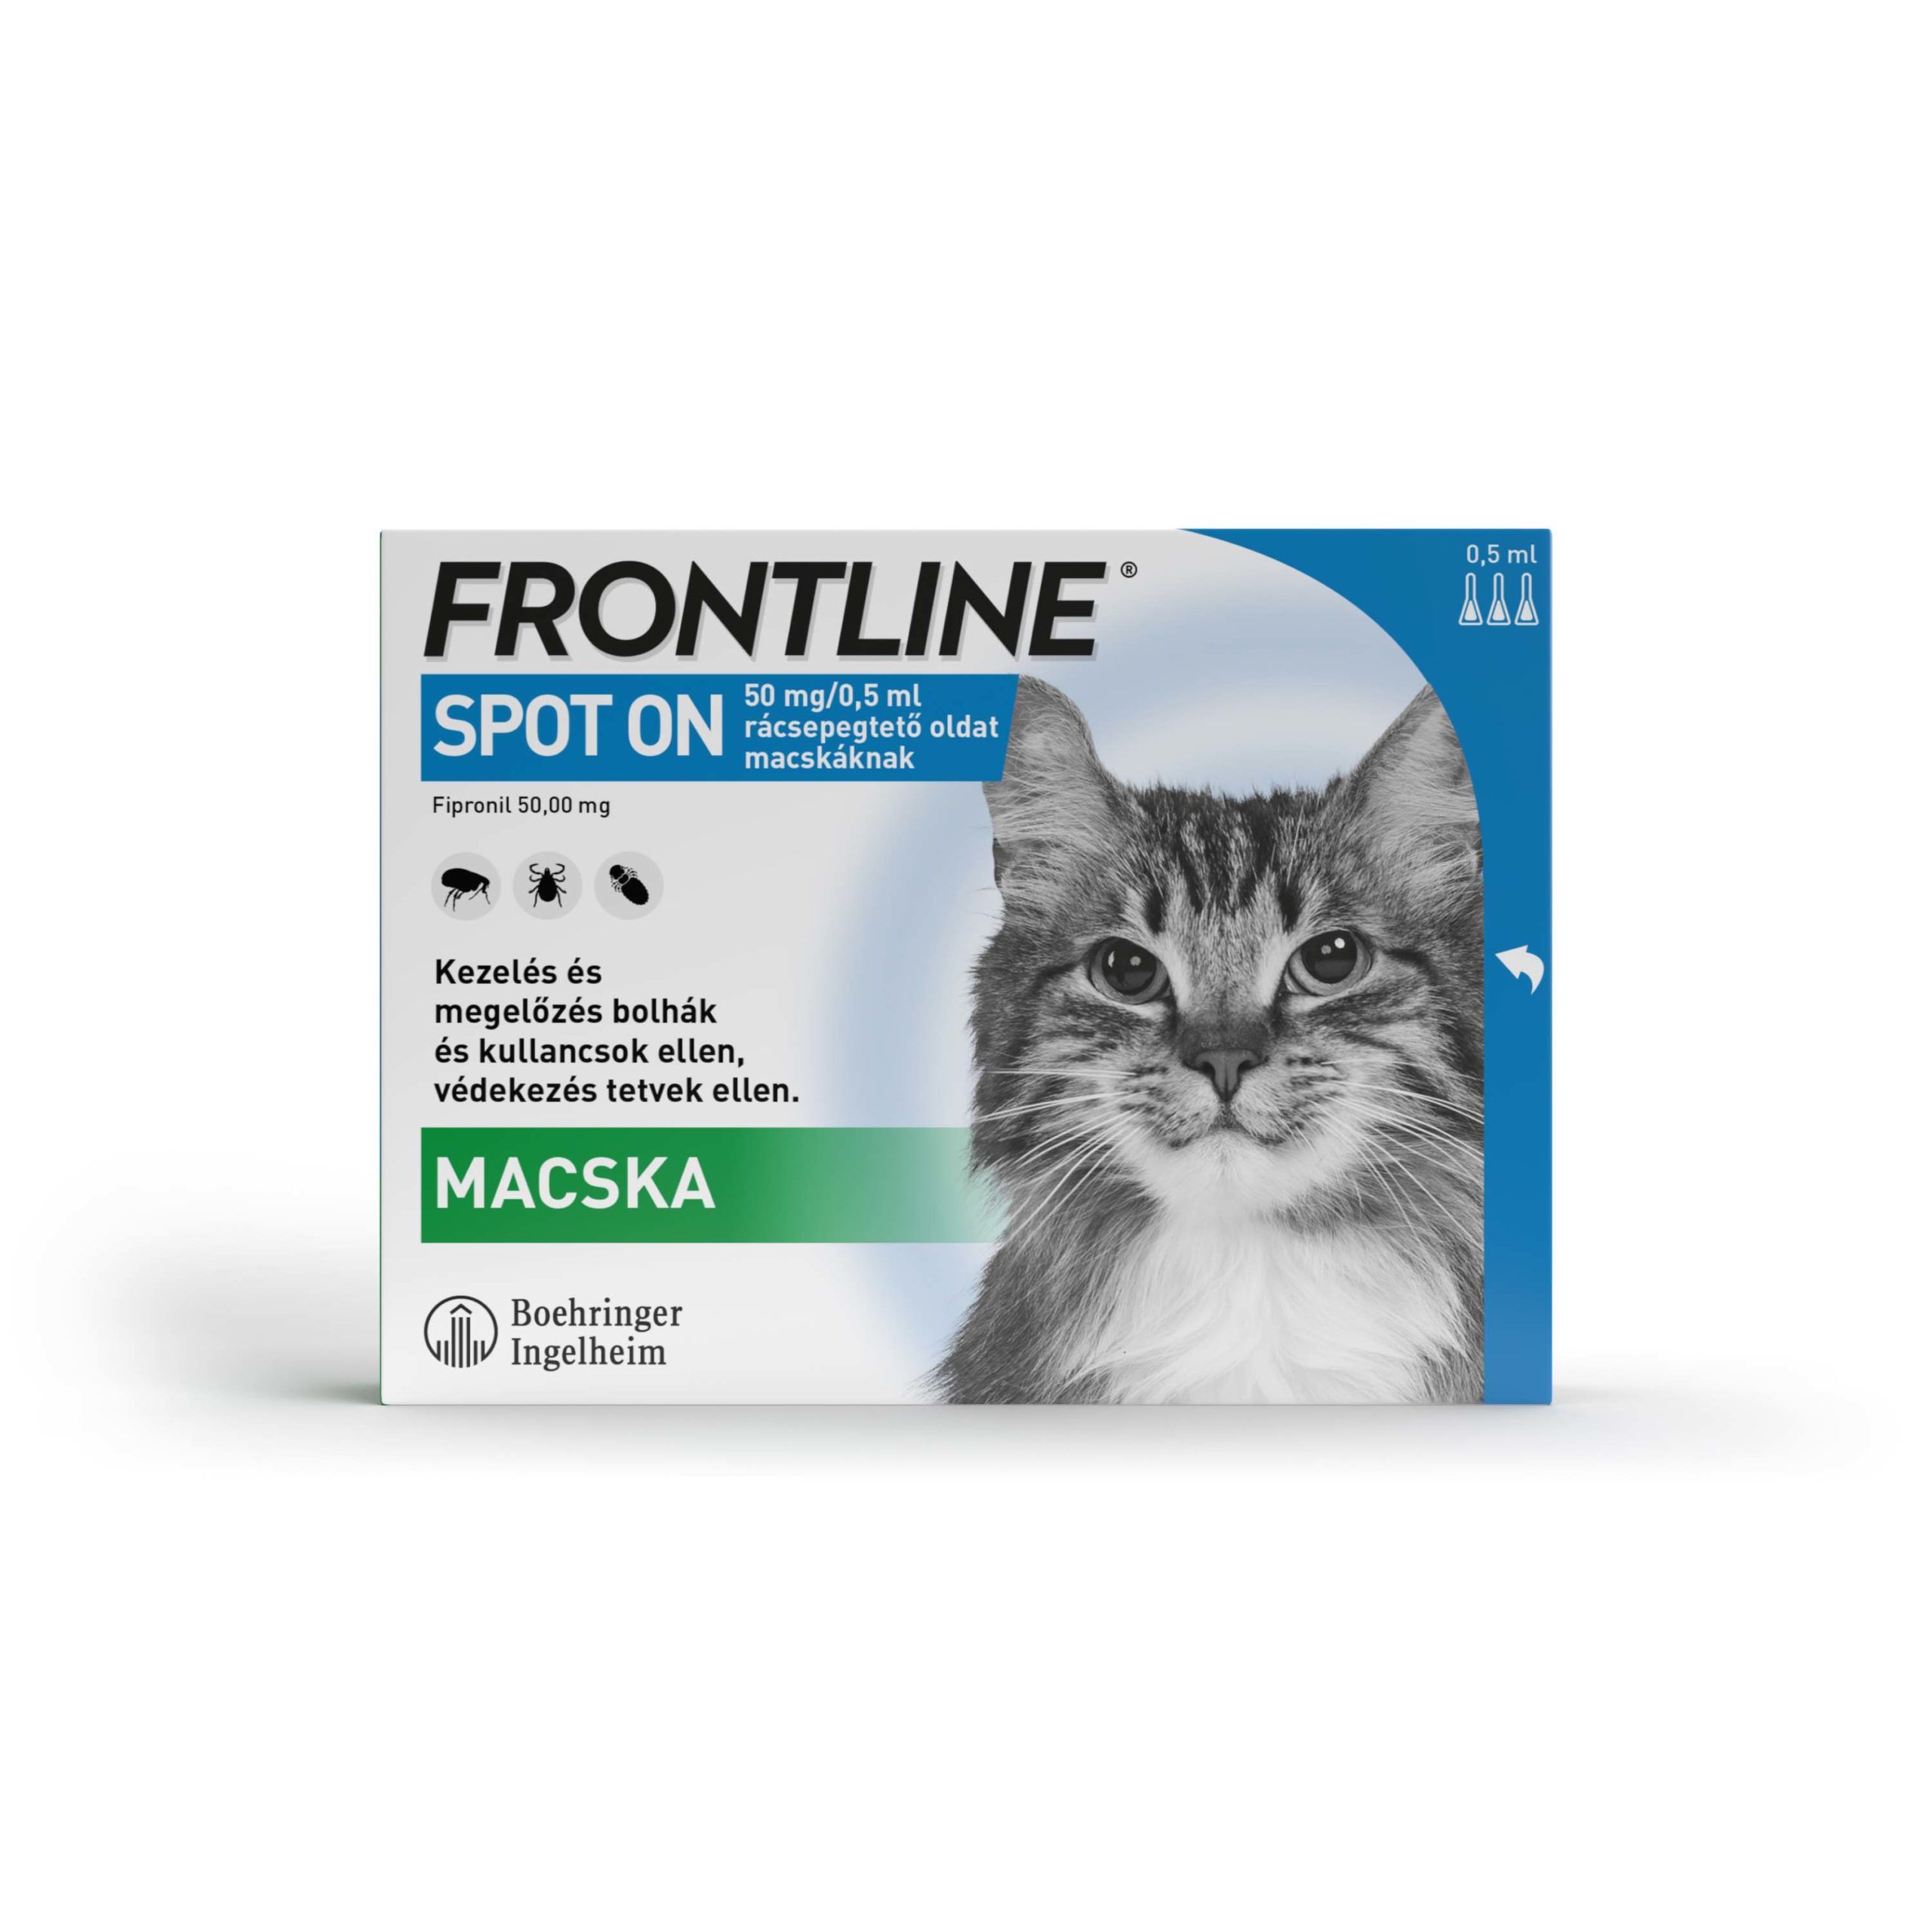 Frontline spot-on kullancs, bolha és tetvek ellen macskáknak 3db